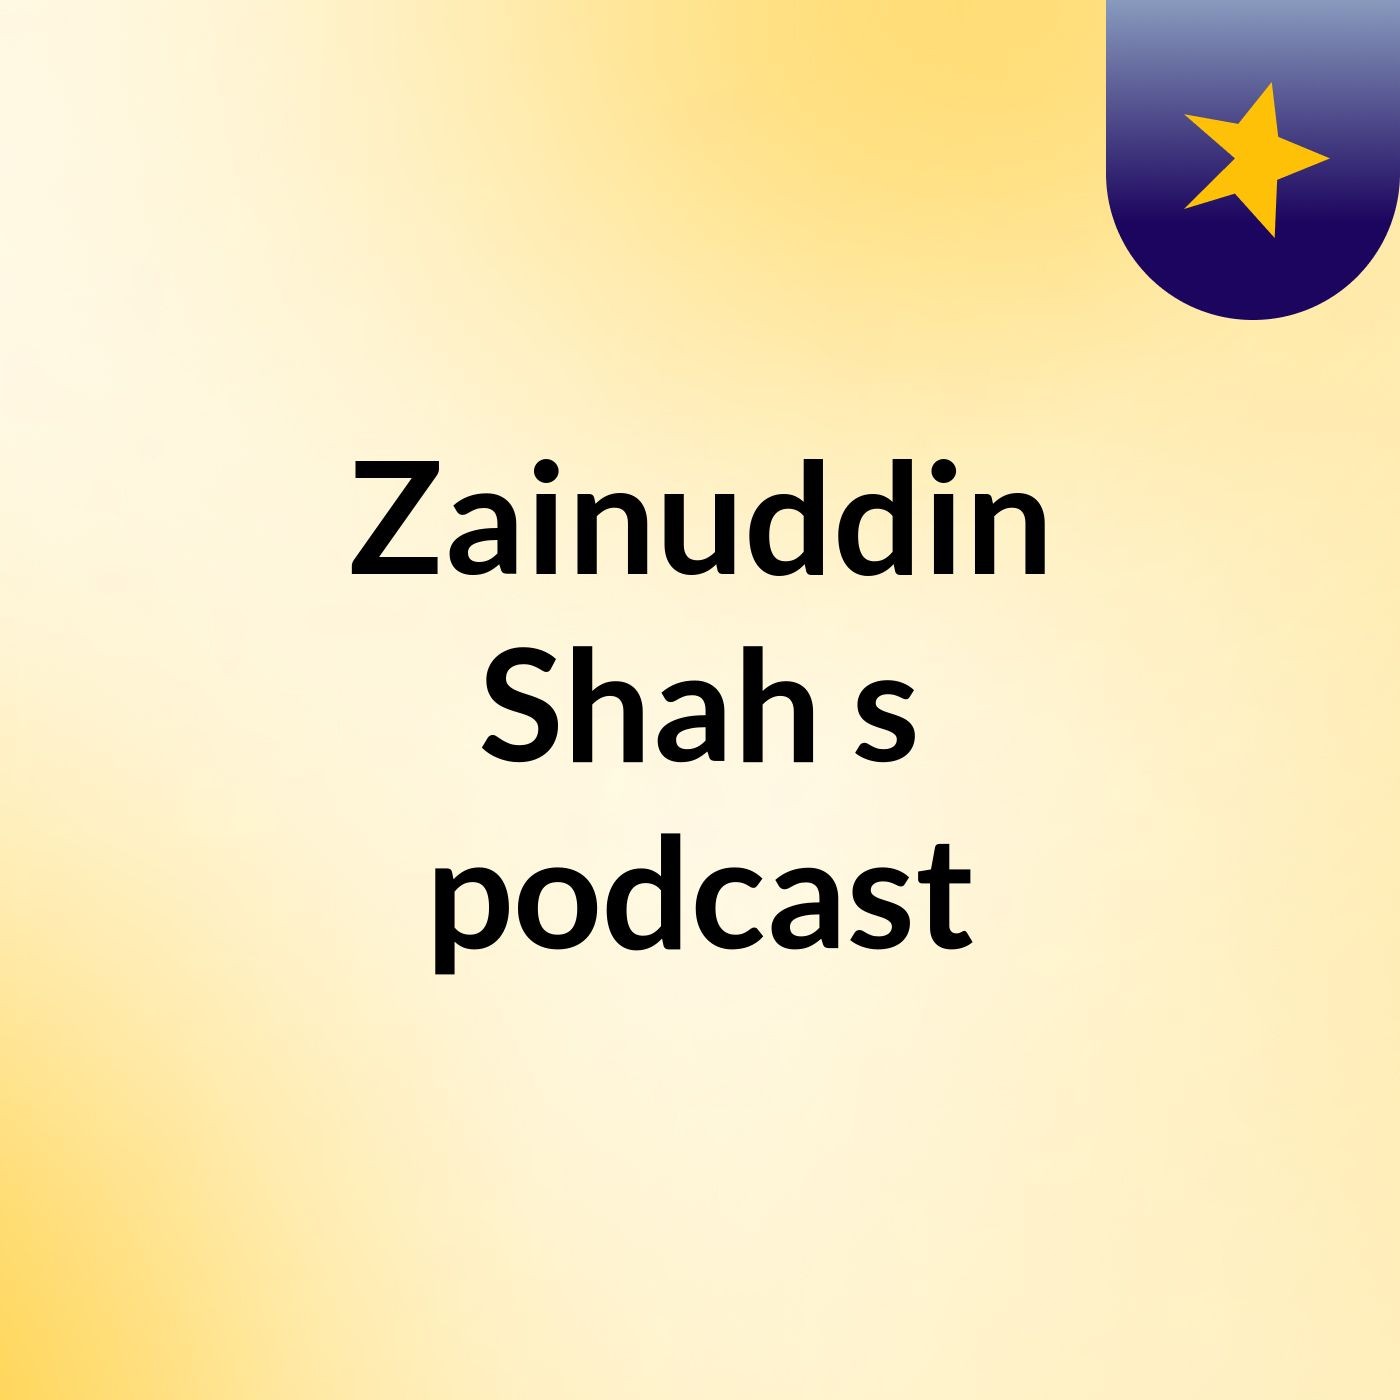 Zainuddin Shah's podcast